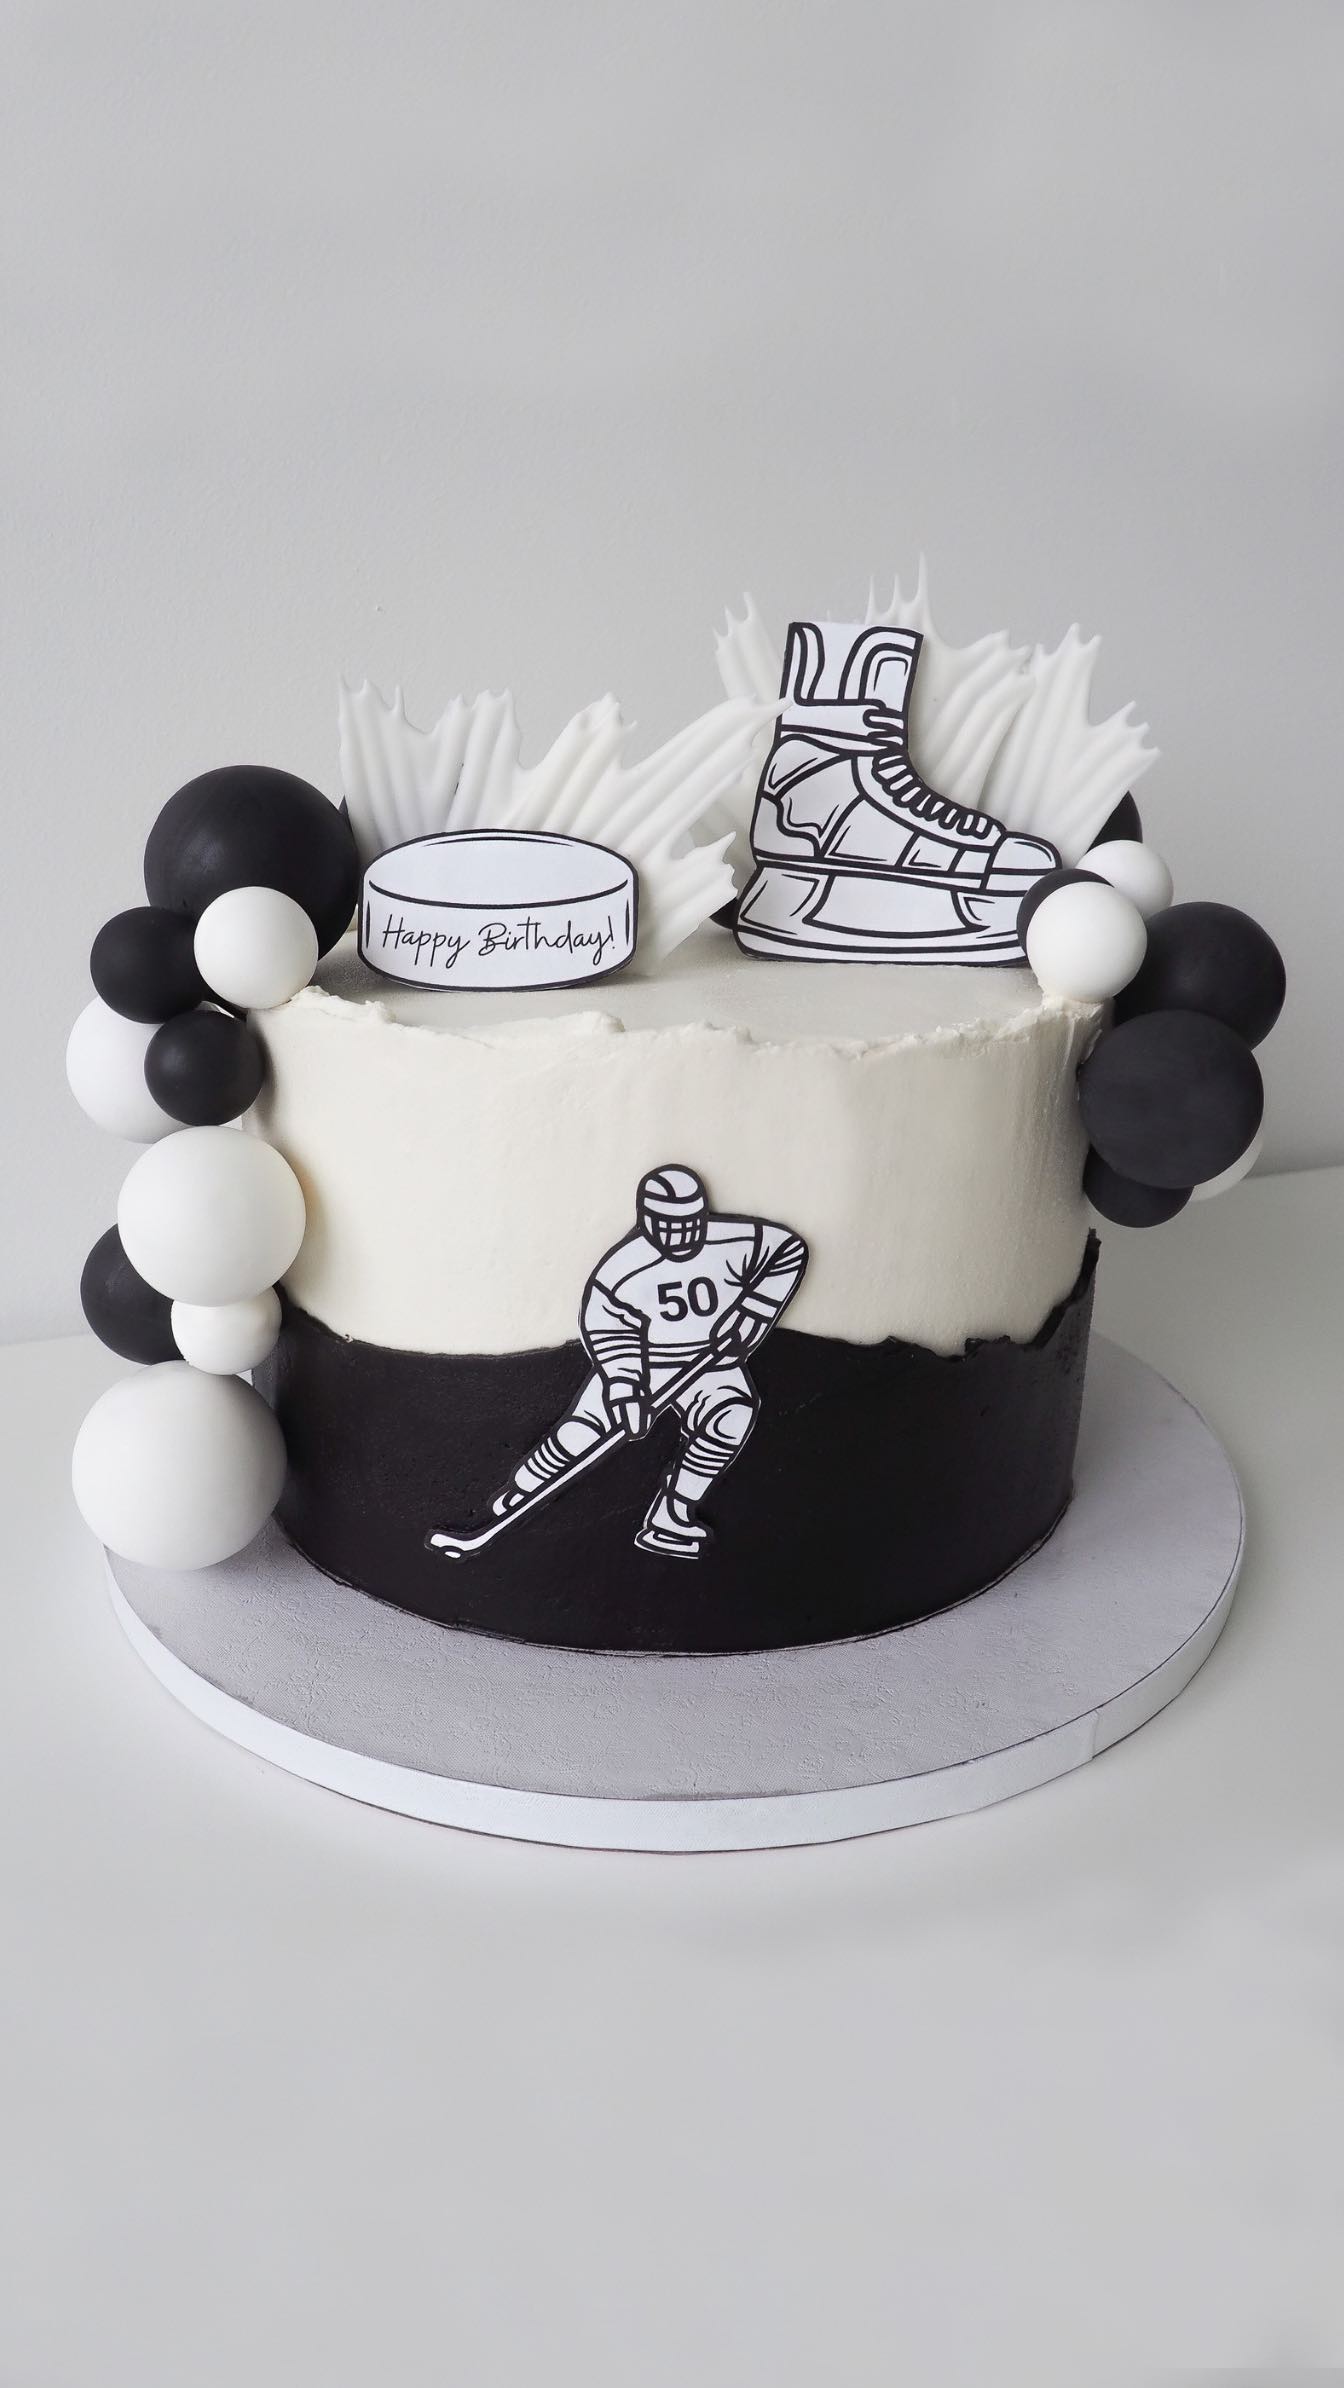 Eishockey Torte zum 50. Geburtstag ⛸️🏒🤍

#eishockeytorte #geburtstagstorte #torte #cake #birthdaycake #icehockeycake #icehockey #eishockey #birthdayparty #50thbirthdaycake #50thbirthday #babytorte #babypartytorte #genderrevealparty #taufe #hochzeit #kindergeburtstag #cupcakesvorarlberg #kindertorte #taufevorarlberg #babypartyvorarlberg #tortenvorarlberg #geburtstagvorarlberg #kindergeburtstagvorarlberg #kinderpartyvorarlberg #hochzeitvorarlberg #hochzeitstortevorarlberg #ländlewedding #zuckerbissen #zuckerbissenbyanja